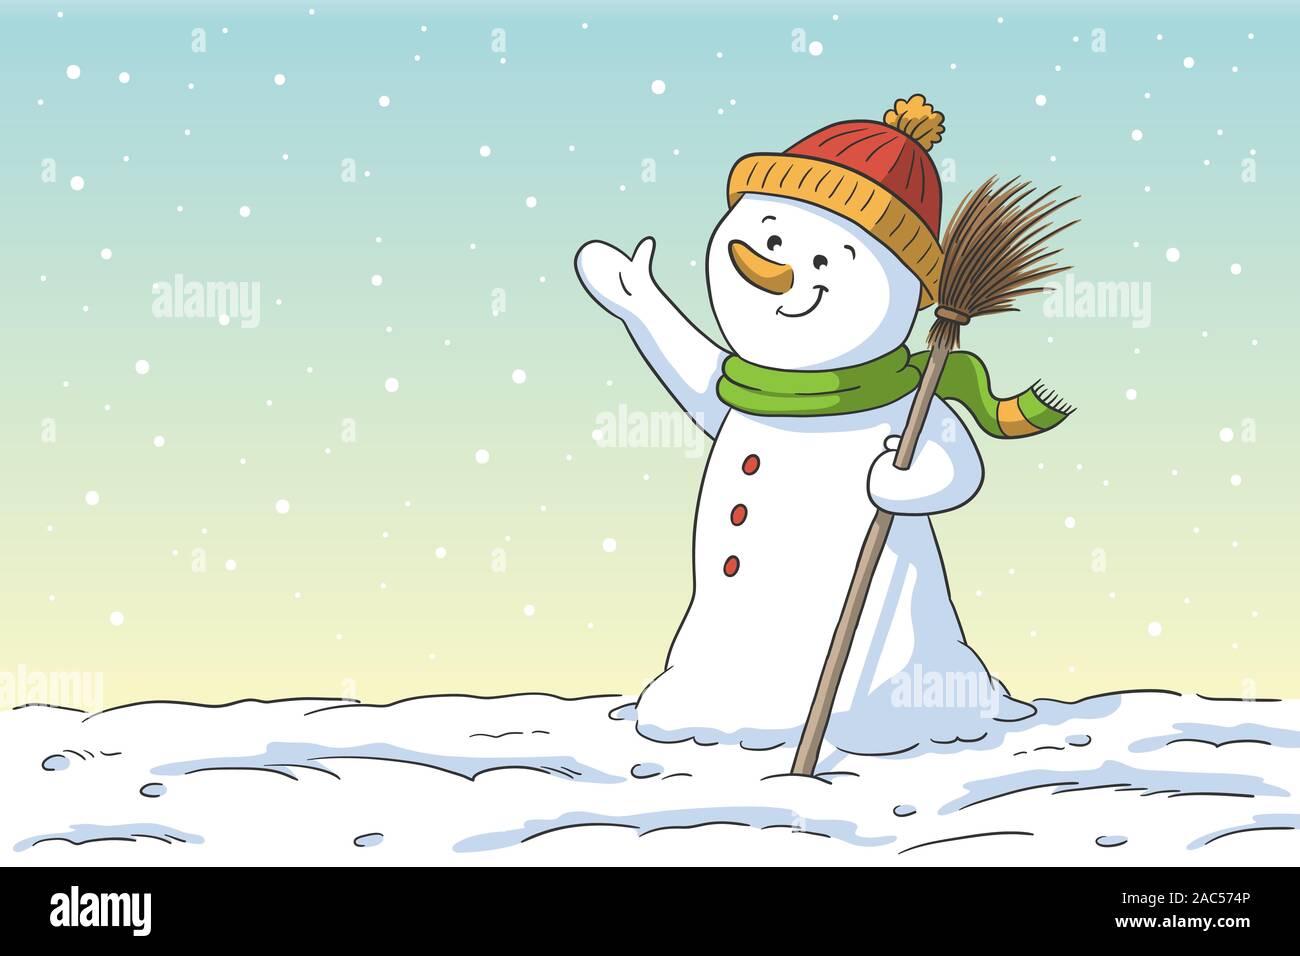 Caricatura de muñeco de nieve. Ilustración vectorial dibujada a mano con capas separadas. Ilustración del Vector